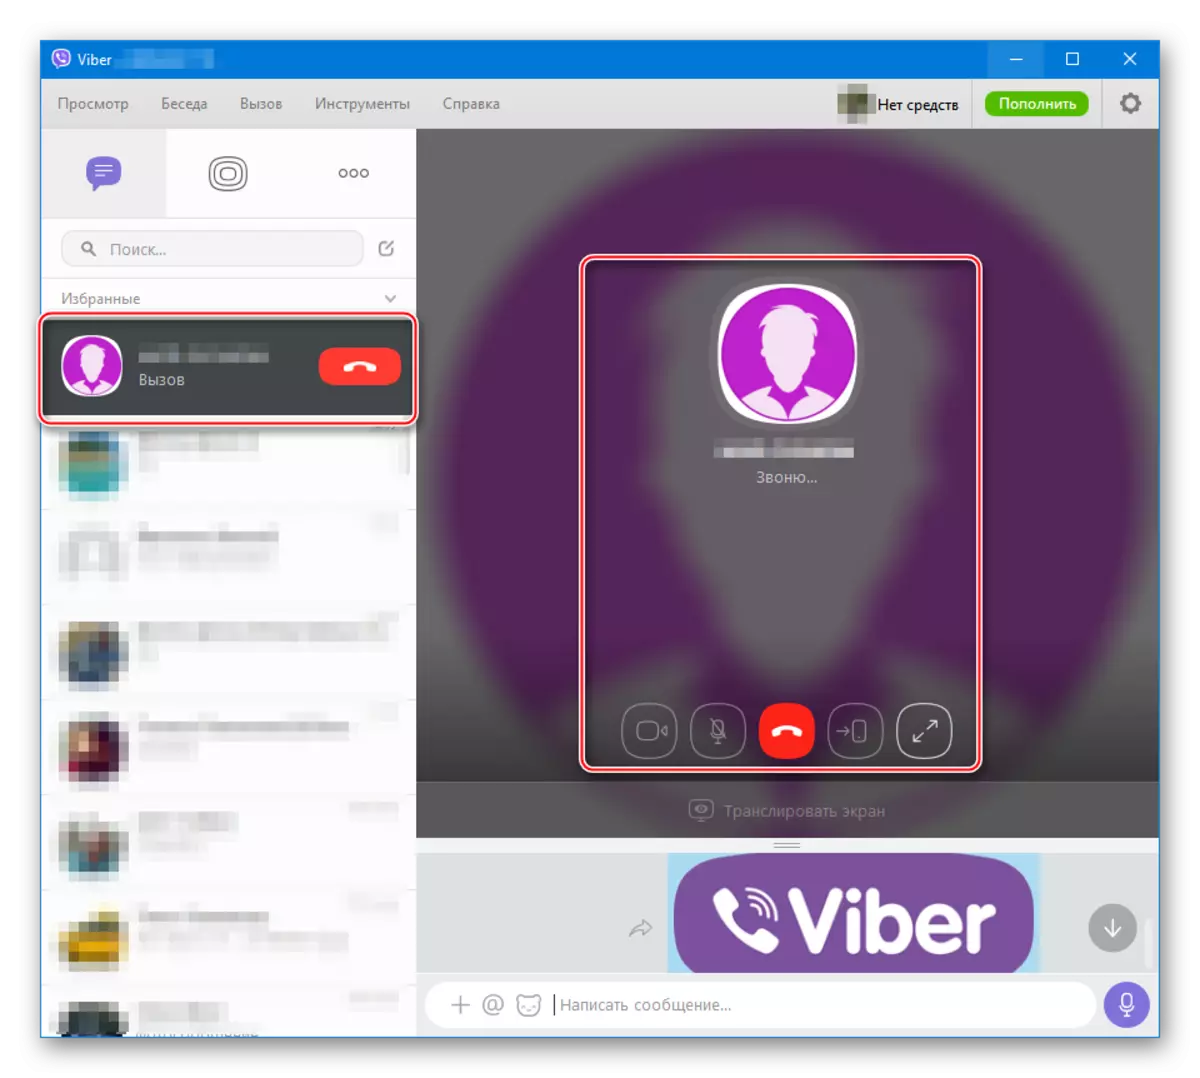 Ang Viber alang sa Windows Audio ug Video Call pinaagi sa Messenger